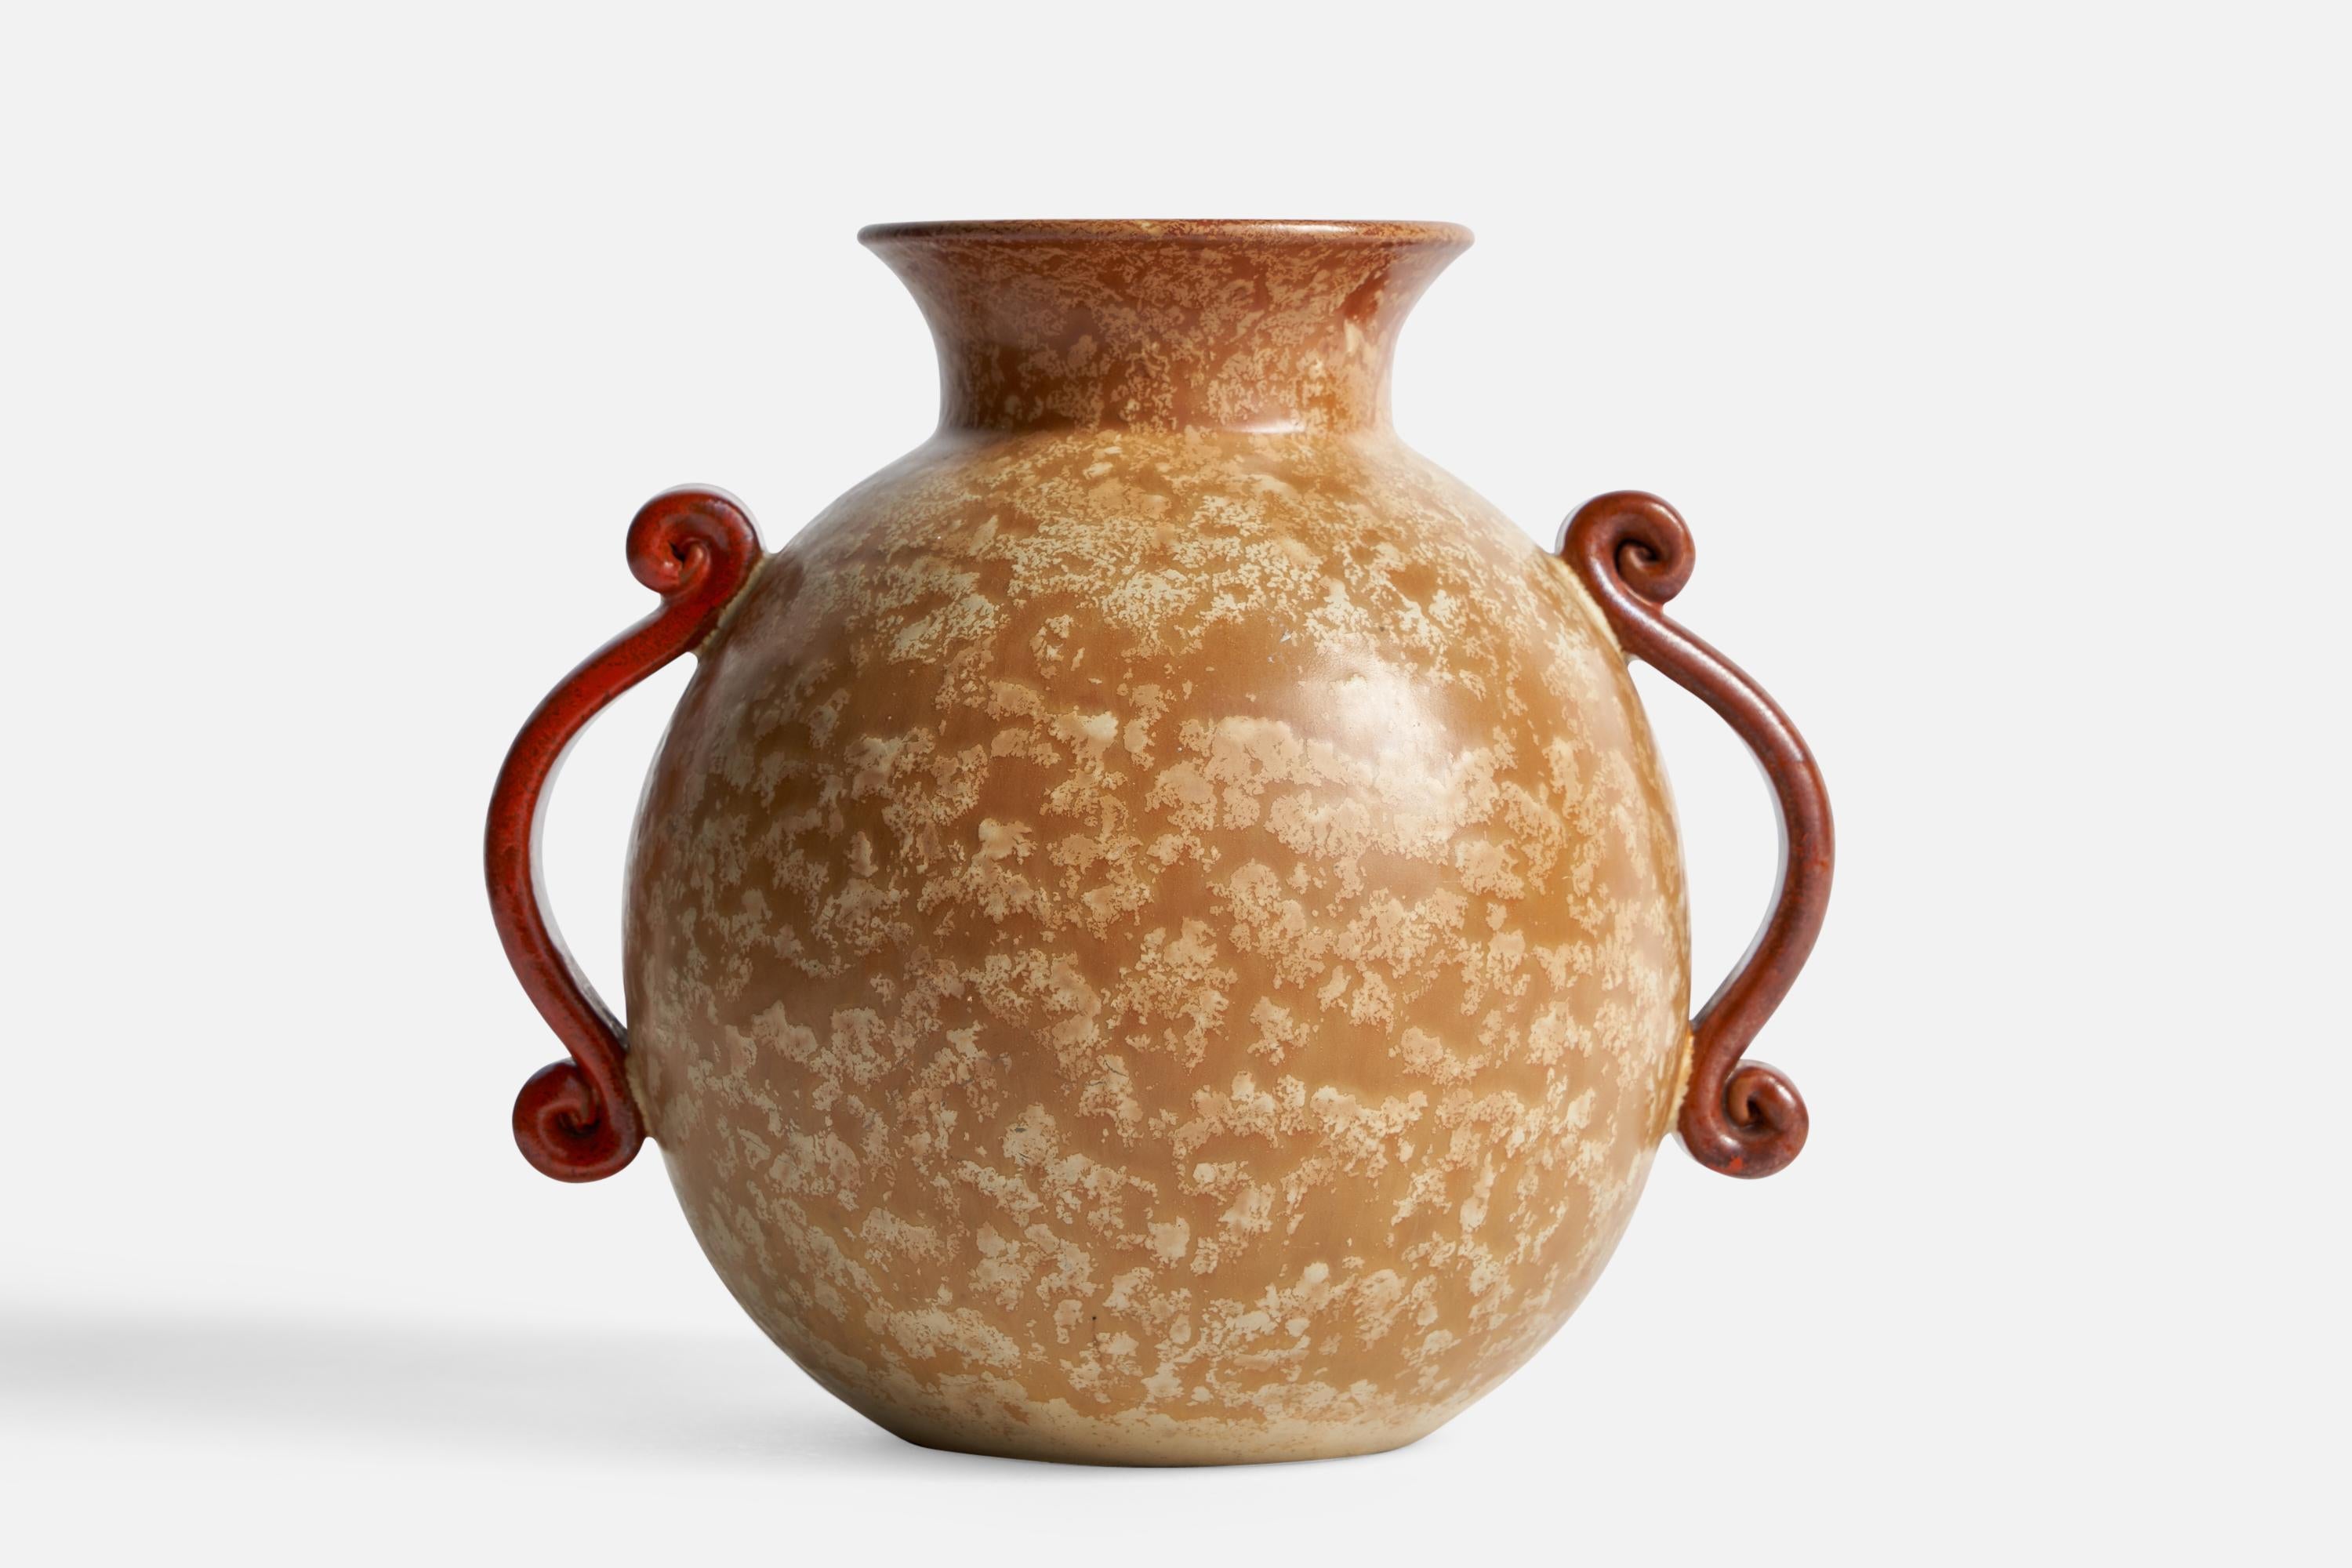 An orange and beige-glazed ceramic vase designed and produced in Sweden, c. 1930s.